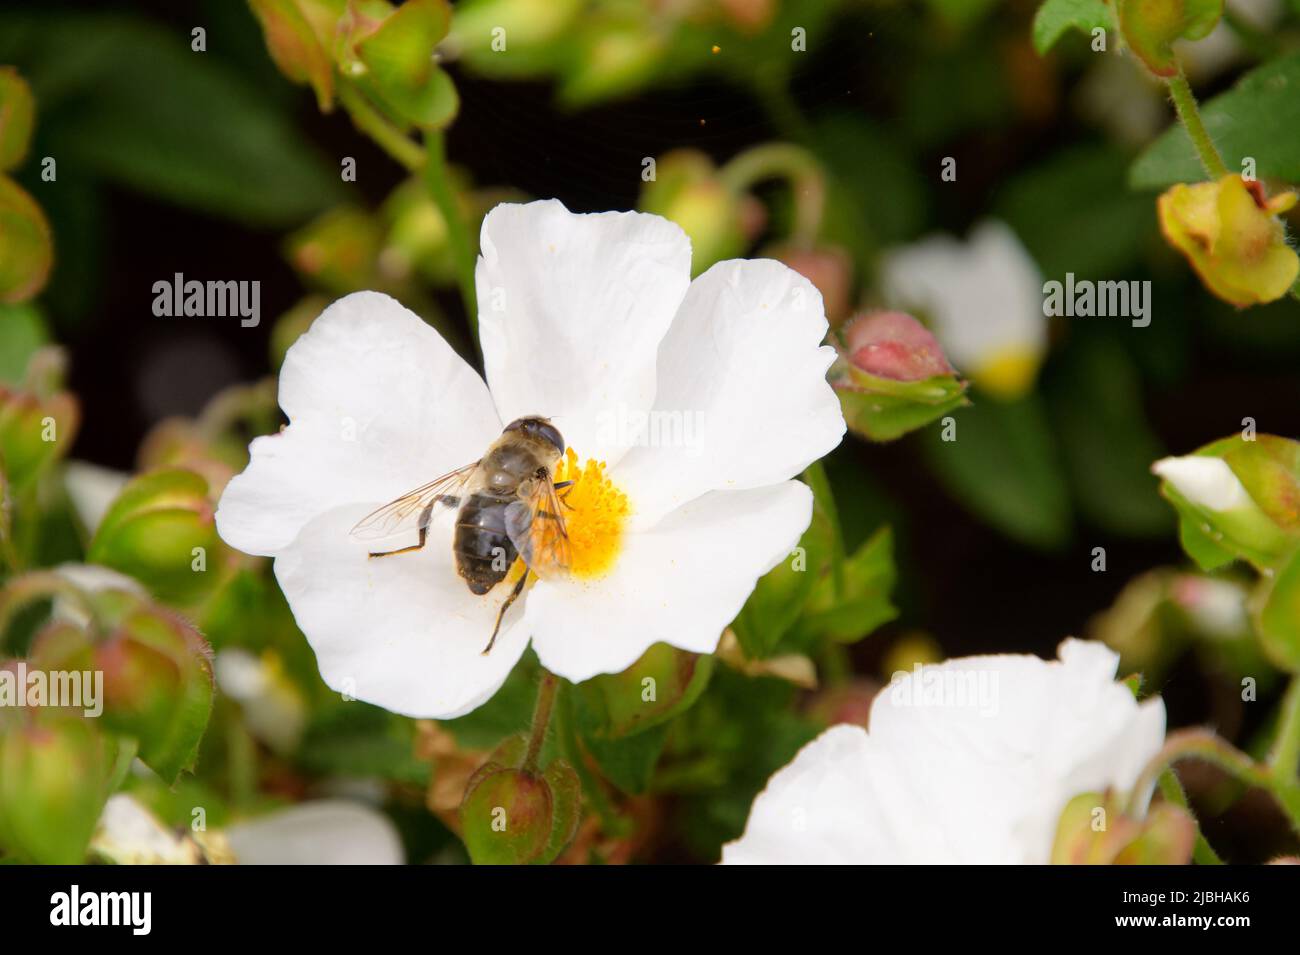 Honigbiene (APIs melifera), die sich auf einer weißen Anemonblume ernährt, Wolds Way Lavender Farm, Wintringham, Malton, North Yorkshire, Großbritannien Stockfoto